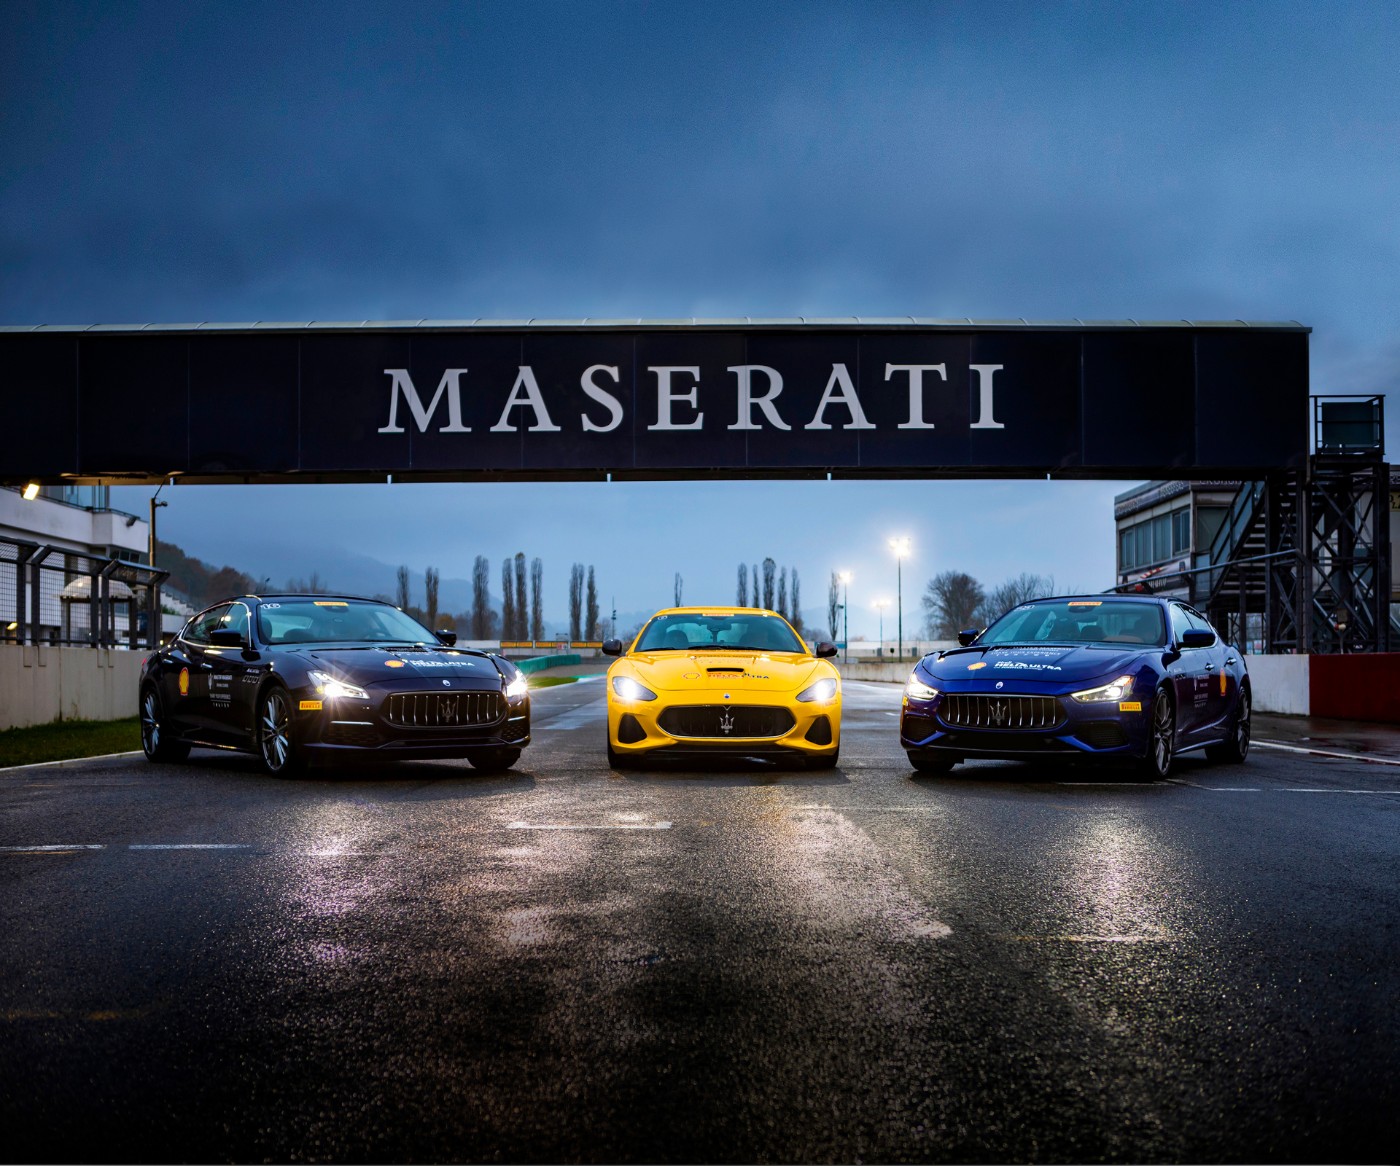 Maserati Fahrtraining: 3 Maserati Fahrzeuge auf einer Rennstrecke